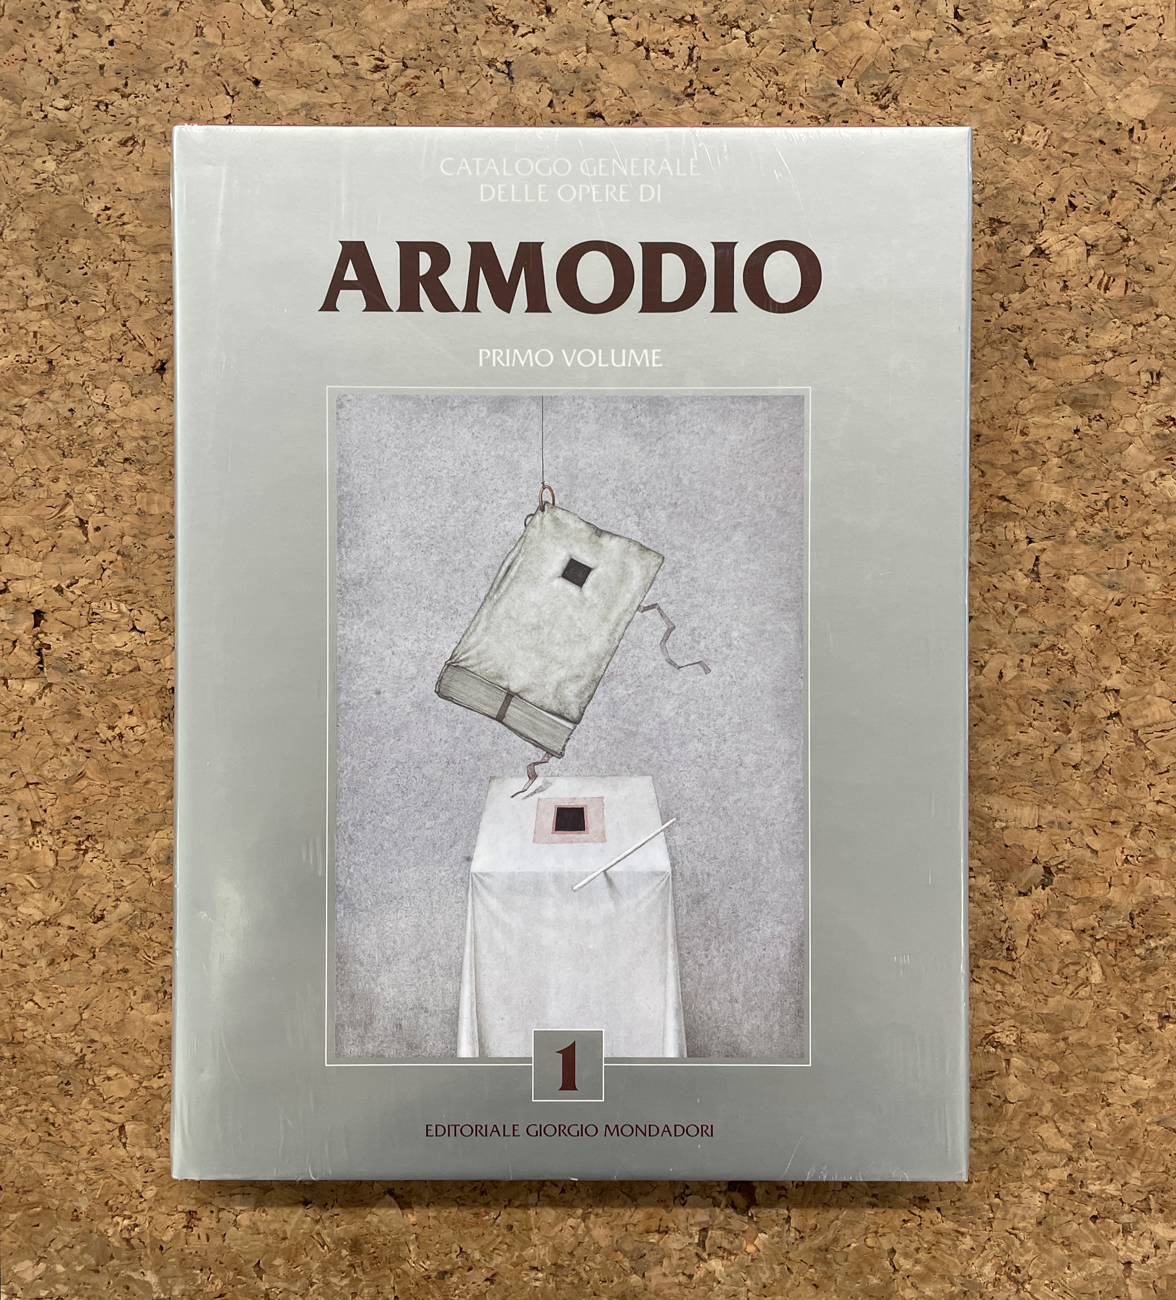 ARMODIO - Catalogo generale delle opere di Armodio. Primo Volume, 2018